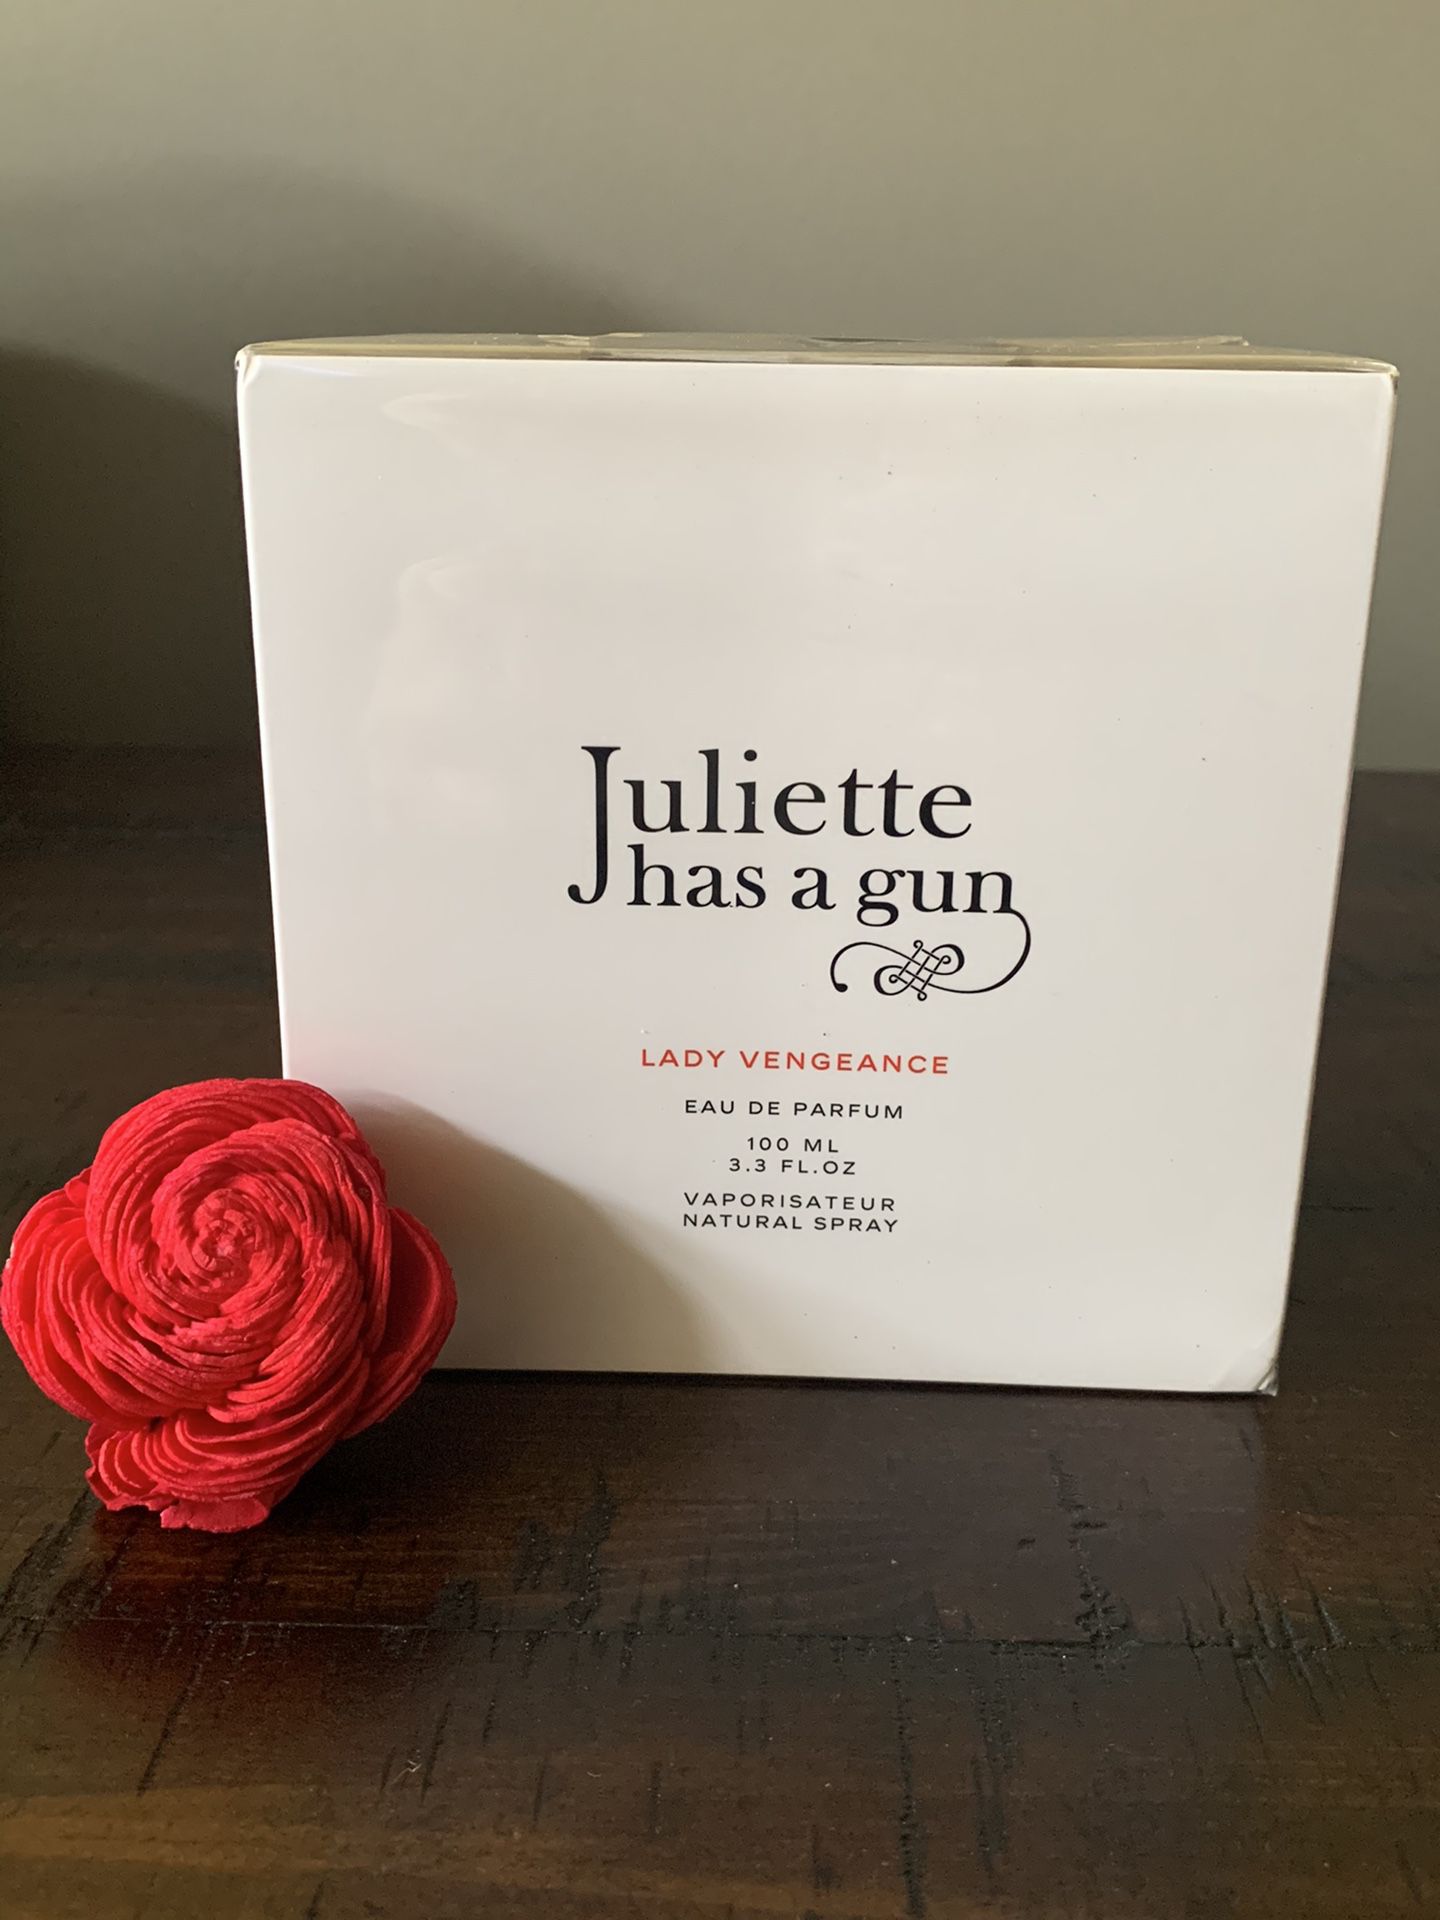 JULIETTE HAS A GUN LADY VENGEANCE Eau de Parfum 100 ml / 3.3 fl oz